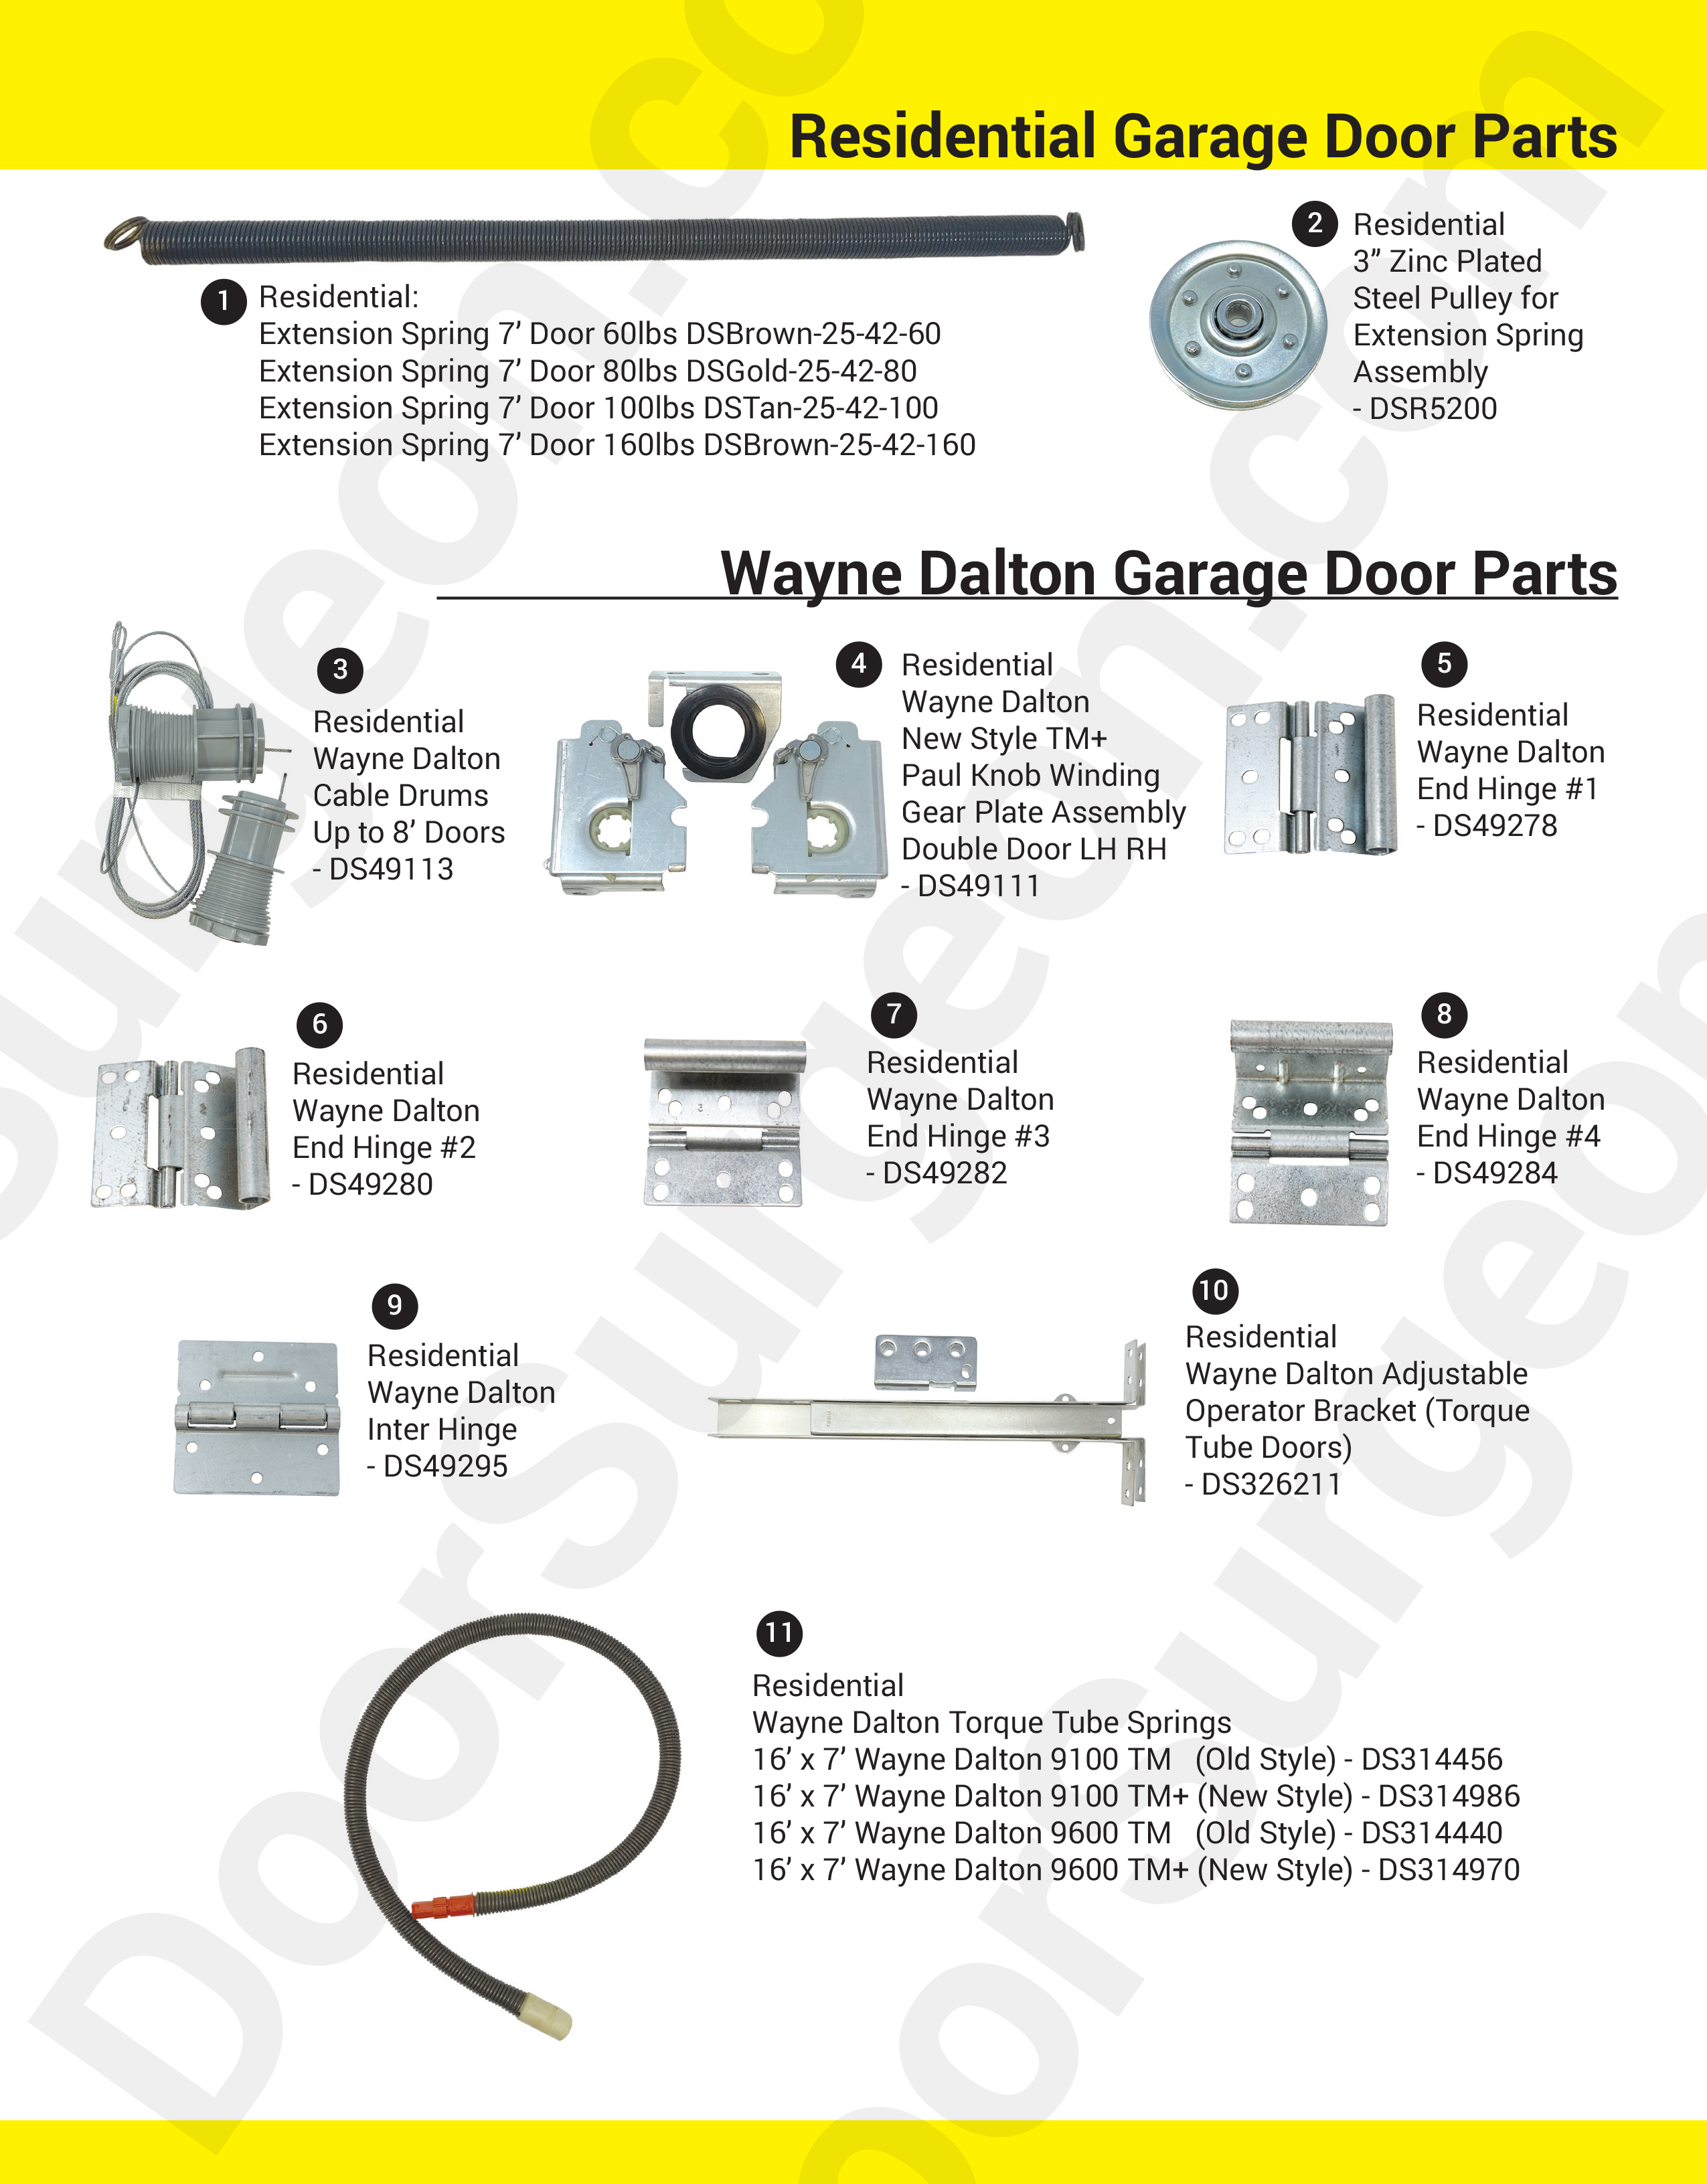 Door Surgeon replacement parts for residential home garage doors Calgary.